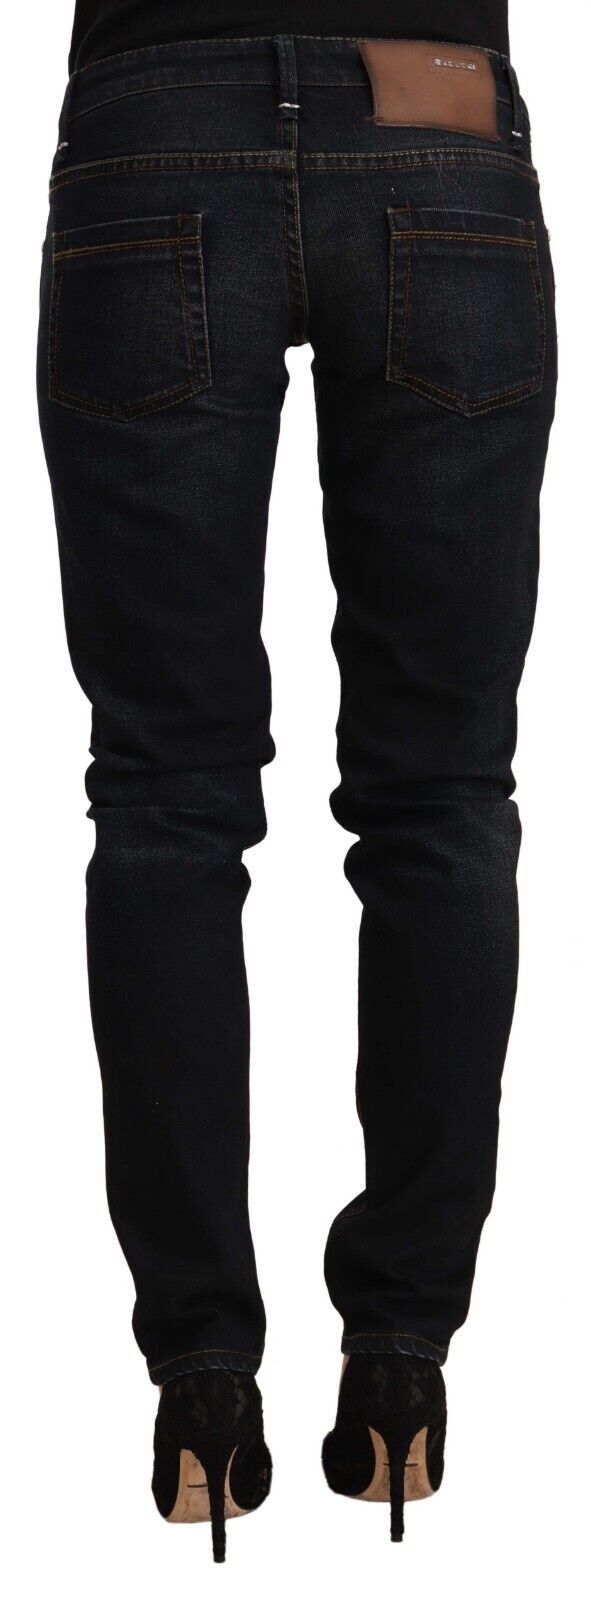 Acht schwarz gewaschene Baumwolle niedrige Taille schlanke Fit -Jeans Jeans